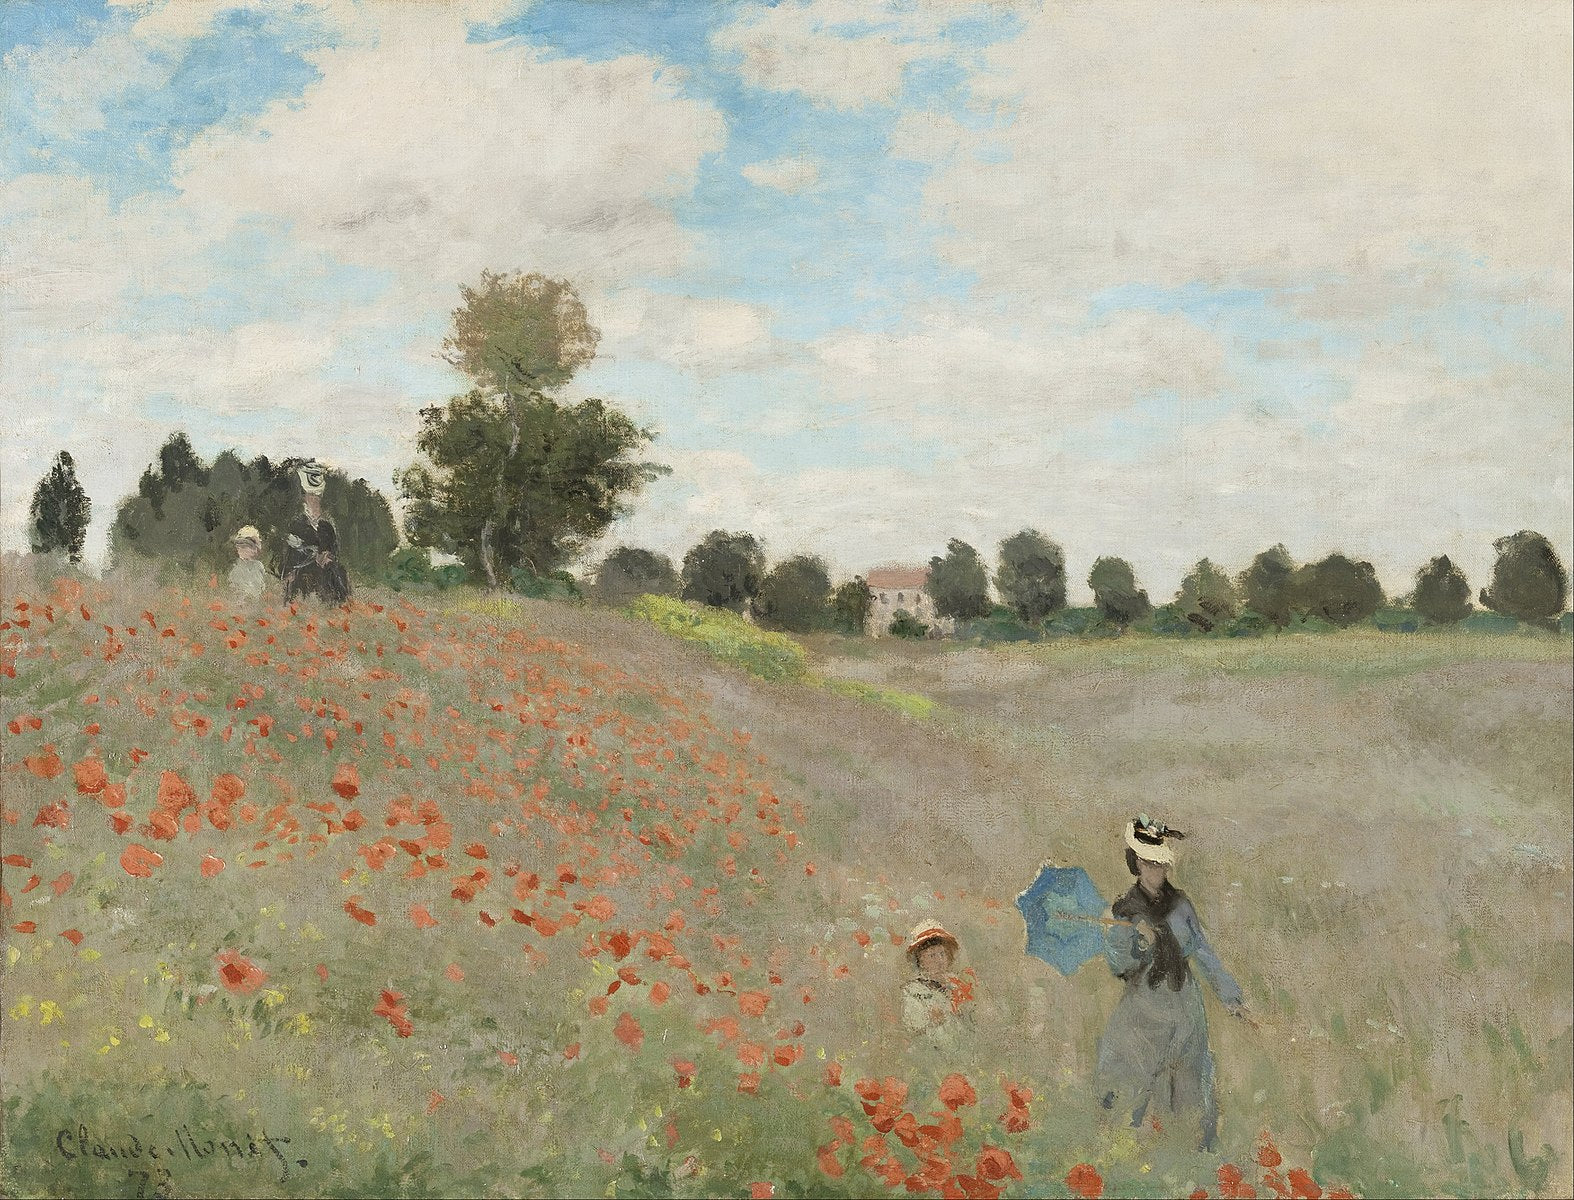 Les Coquelicots - Claude Monet